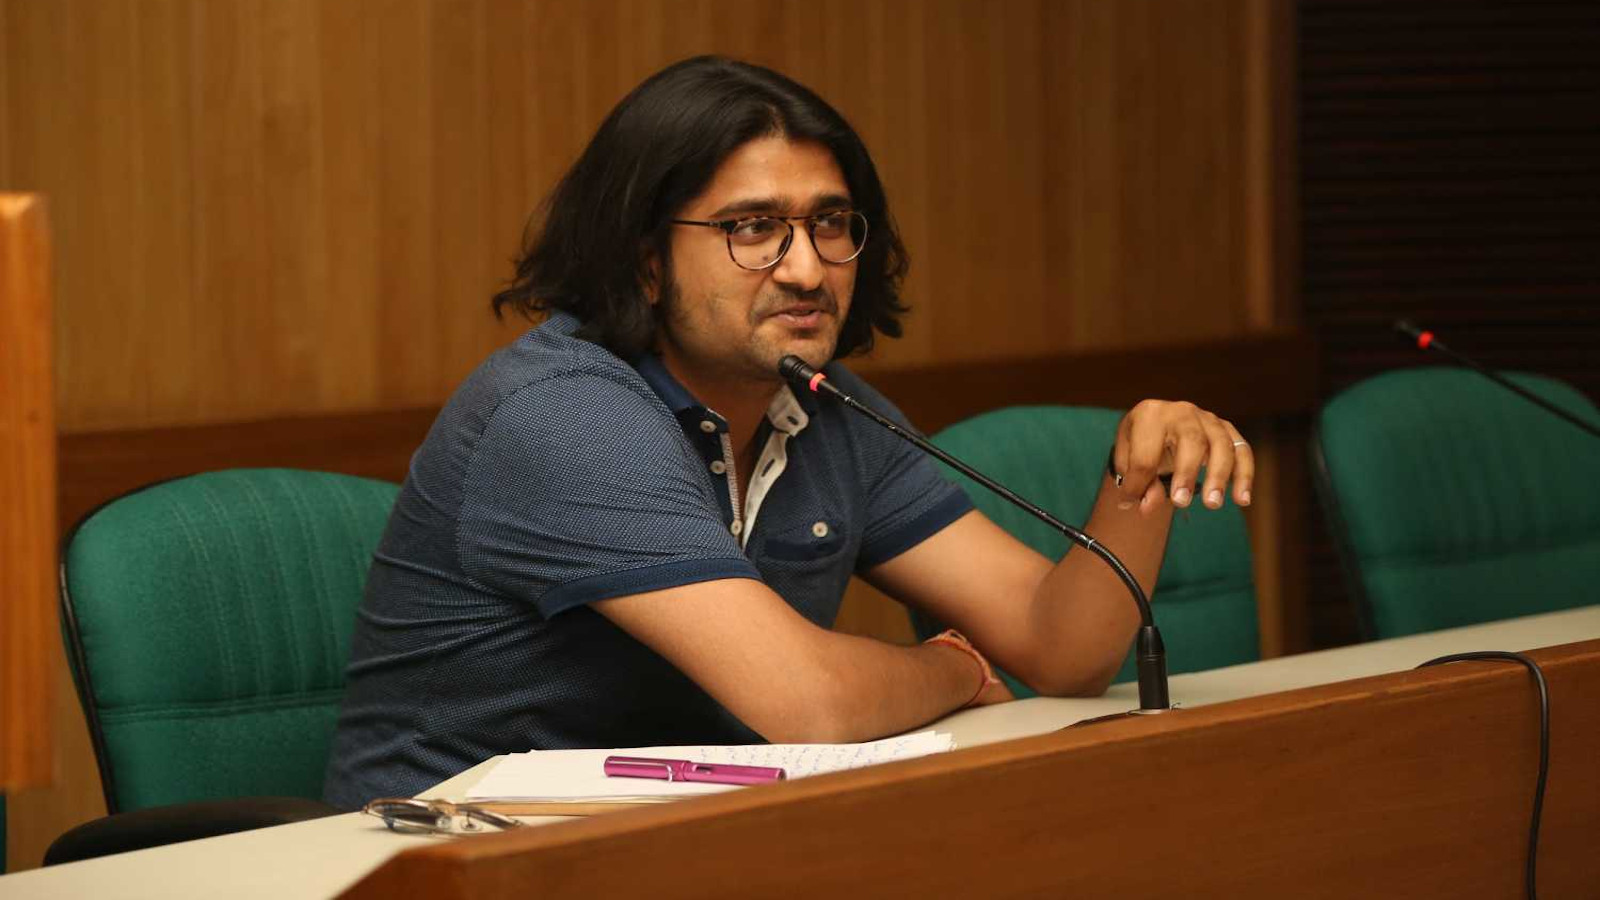 Rahul Jain on ohjannut elokuvasäätiön tukeman elokuvan Invisible Demons, joka on valittu Cannesin festivaalin 2021 ohjelmistoon.